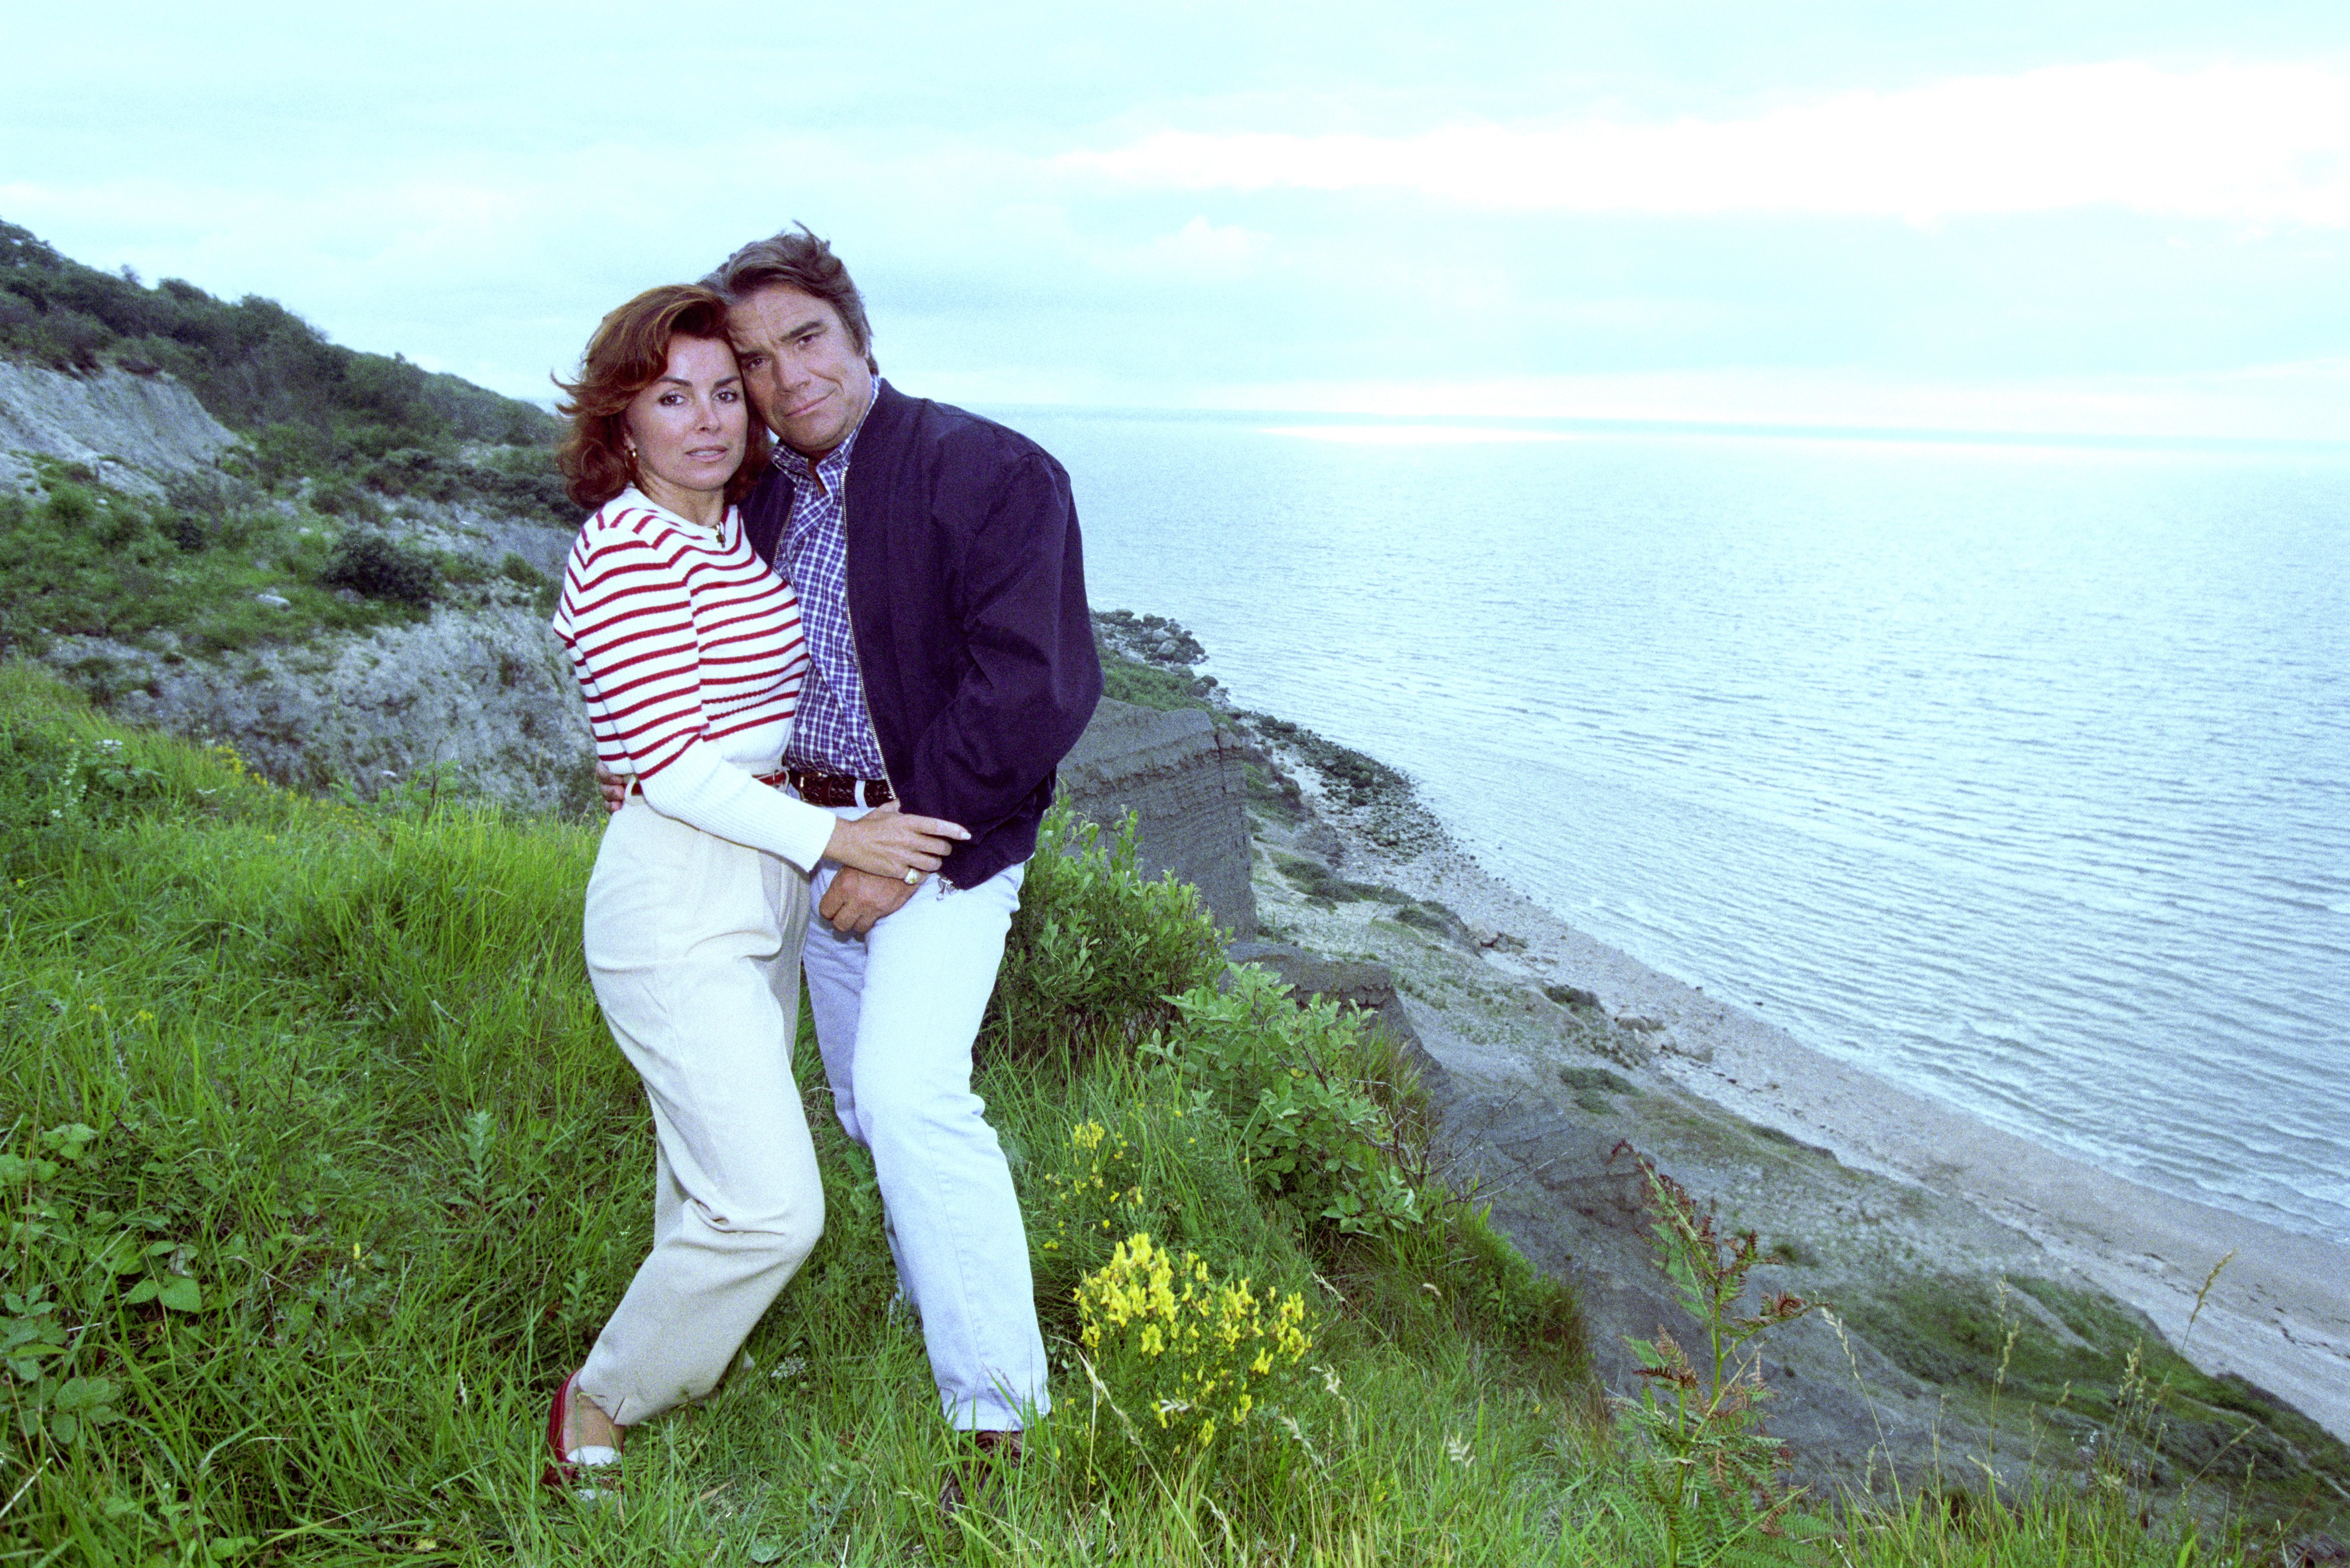 Bernard et Dominique Tapie sur une falaise normande en juillet 1996, France. | Source : Getty Images